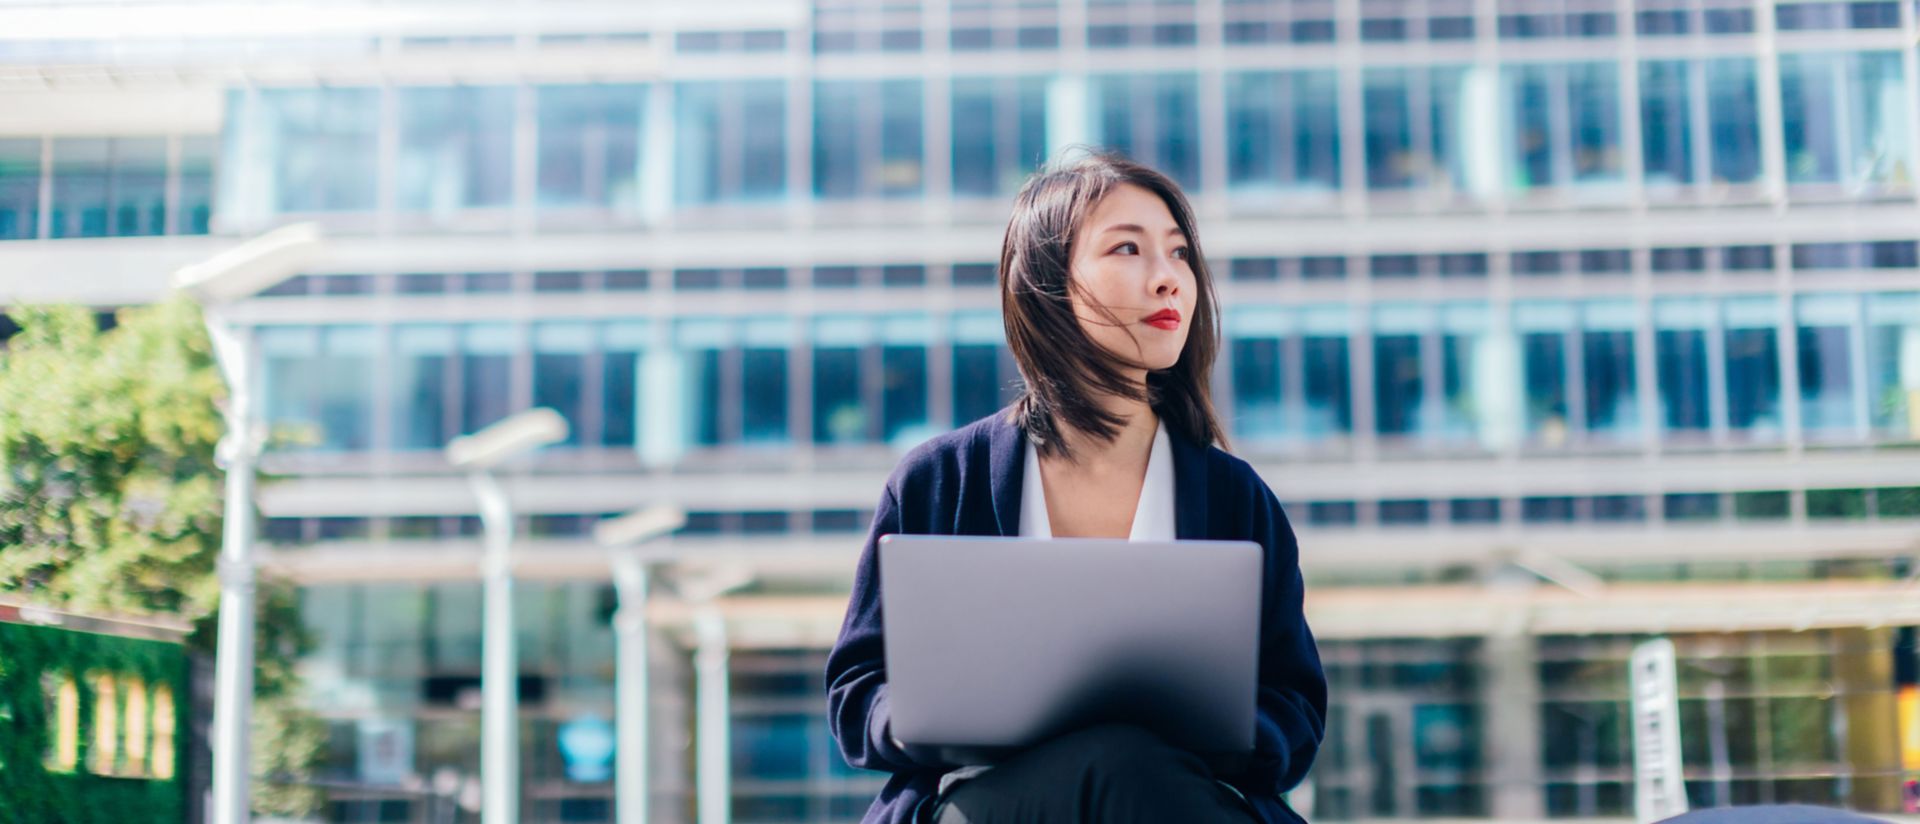 Immagine di donna al computer portatile seduta davanti a un edificio